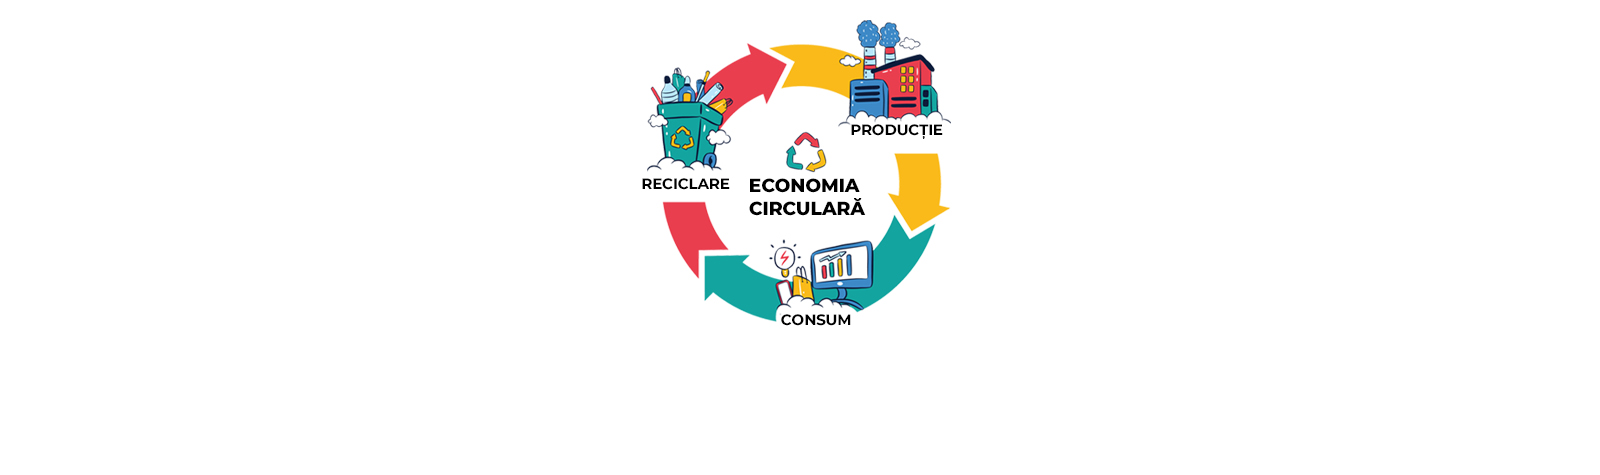 Beneficiile economiei circulare pentru mediu și societate